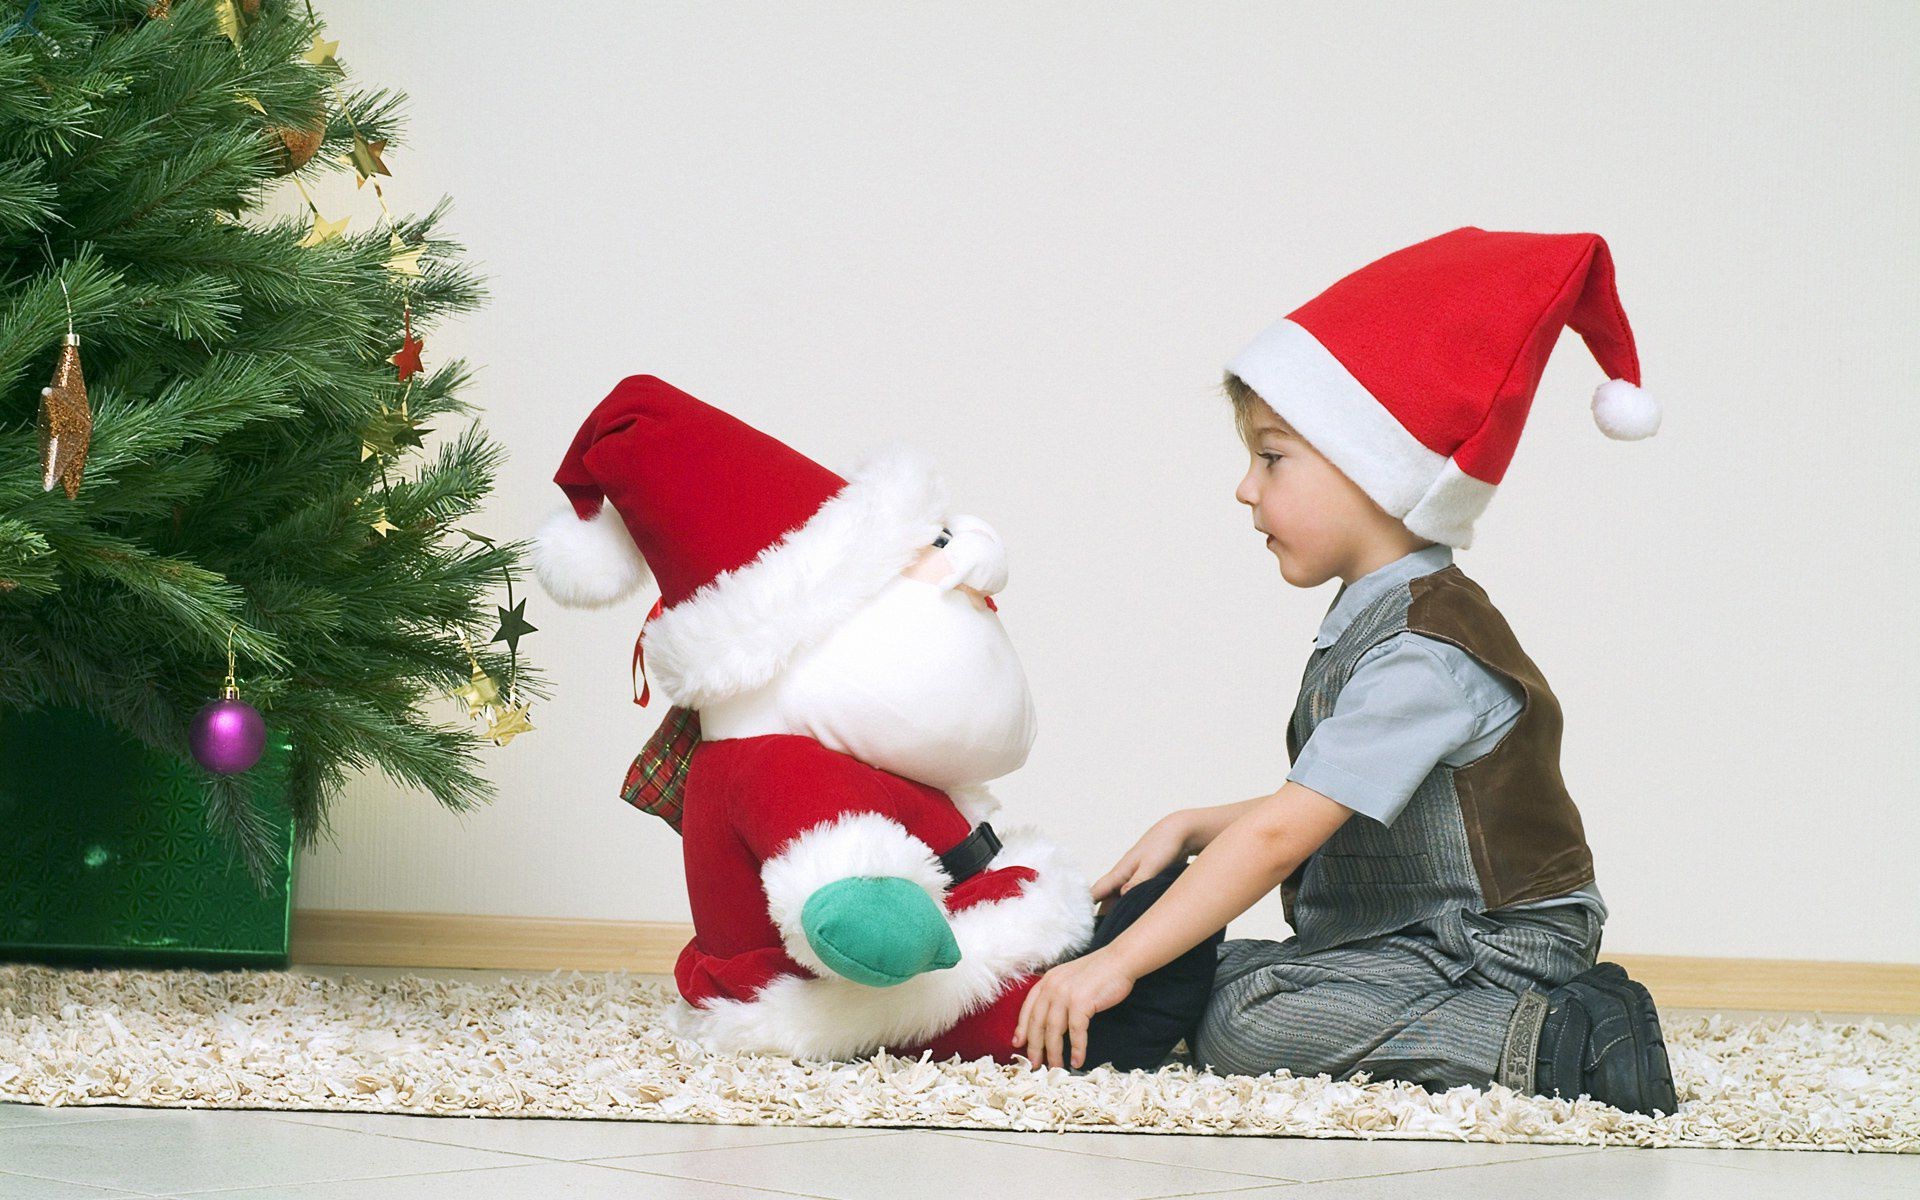 новый год рождество зима праздник мерри рождественская елка ребенок крышка подарок отпуск ева коробка удовольствие снег счастье появлением милые